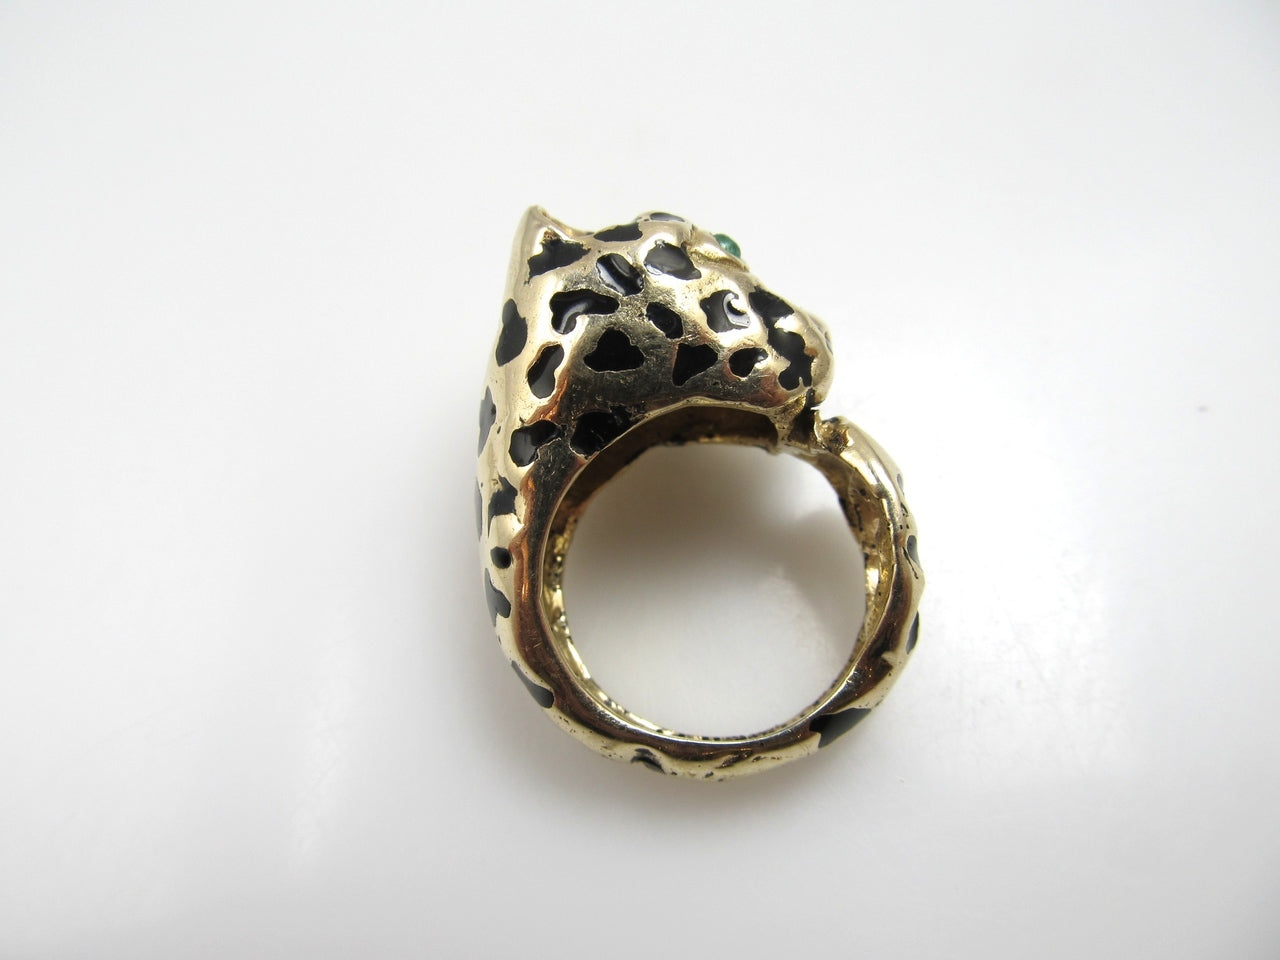 14k Yellow Gold Enamel Panther Ring With Emerald Eyes, Circa 1960